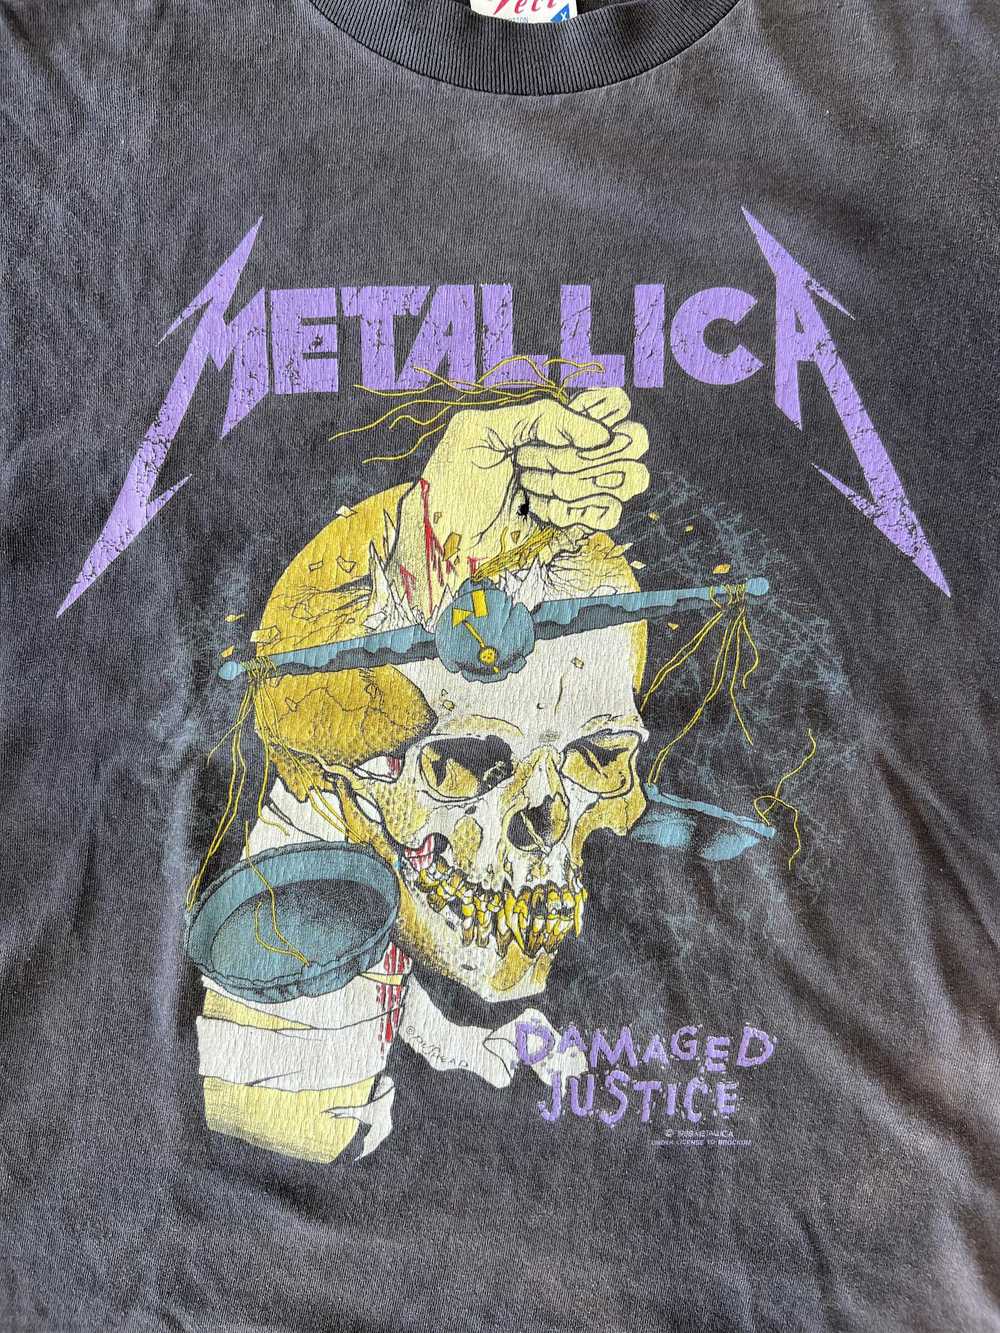 Vintage Vintage metallica damaged justice shirt - image 2